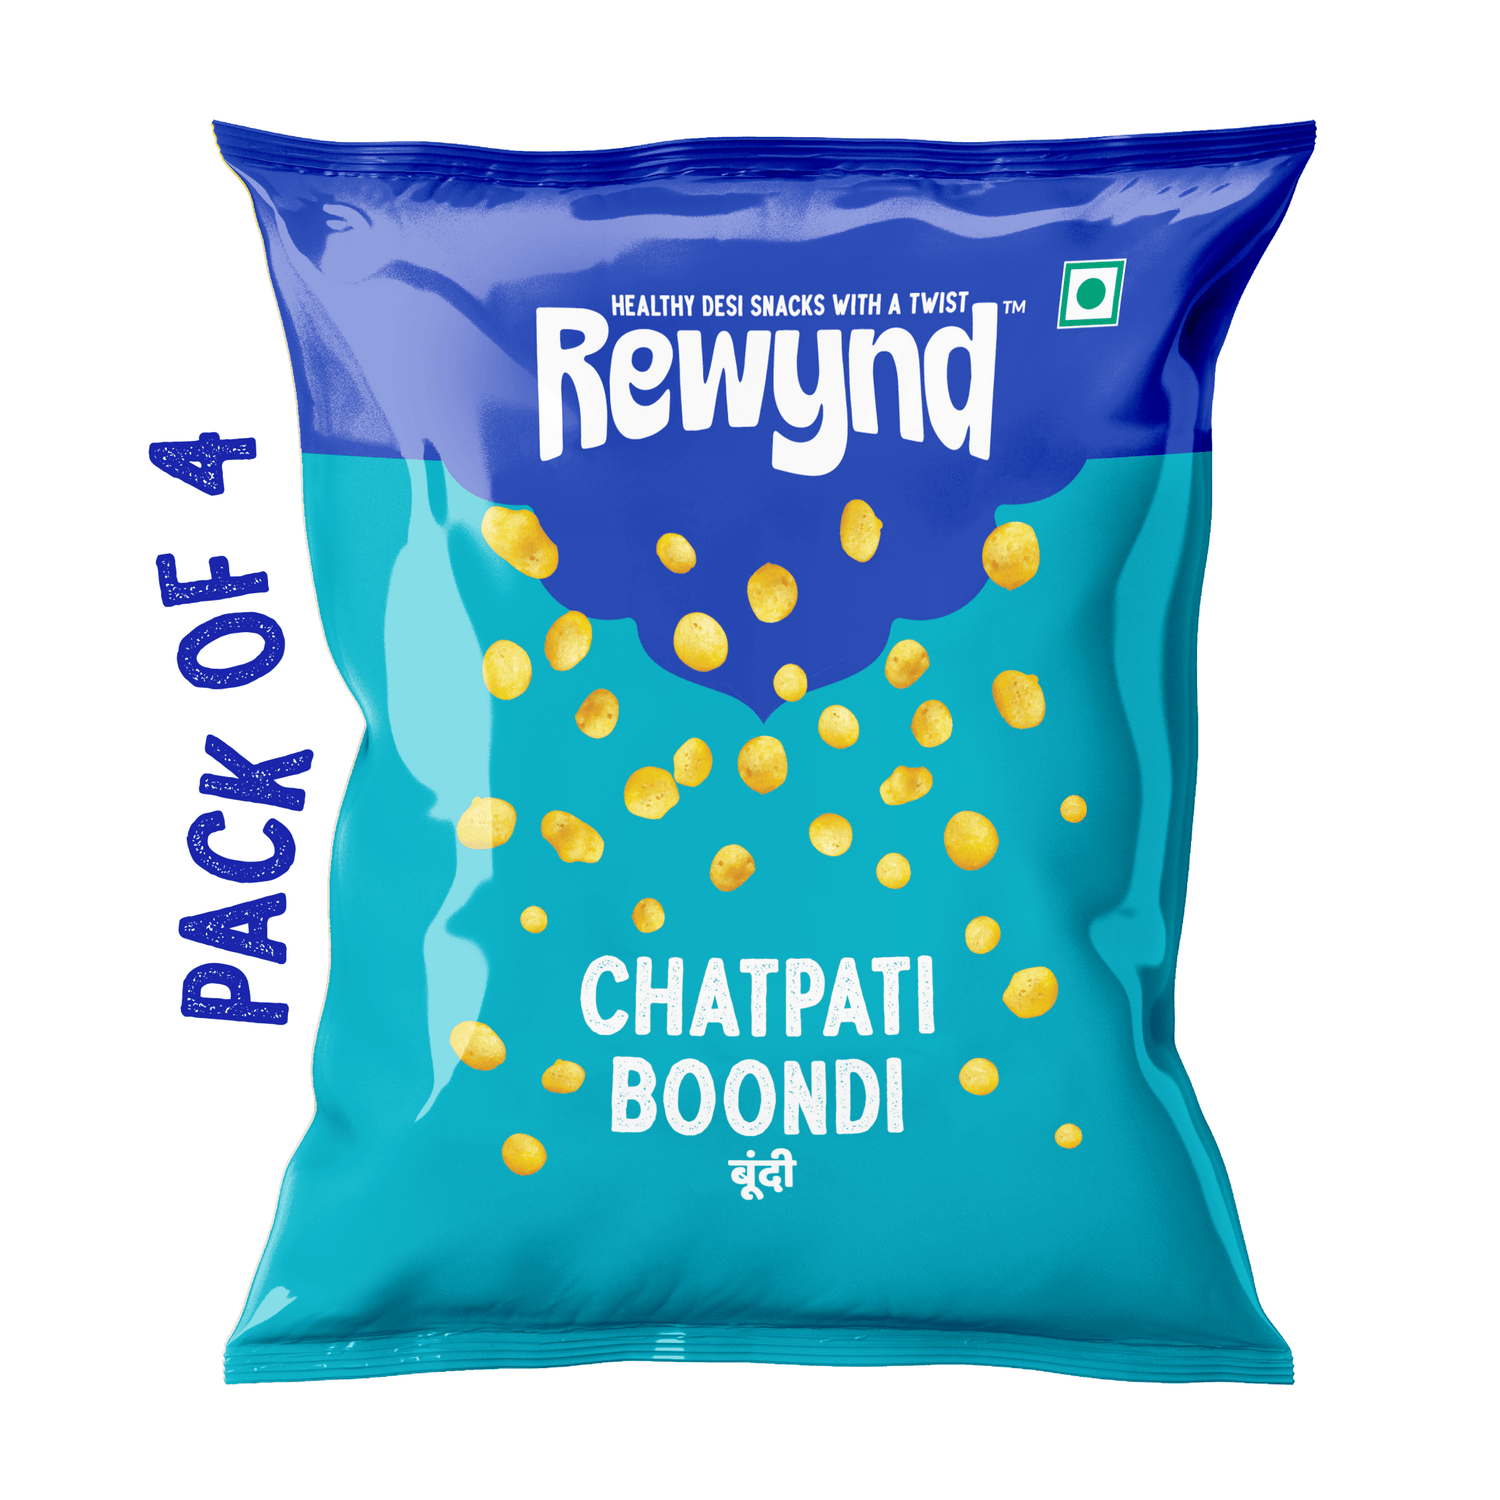 Chatpati Boondi - Rewynd Snacks